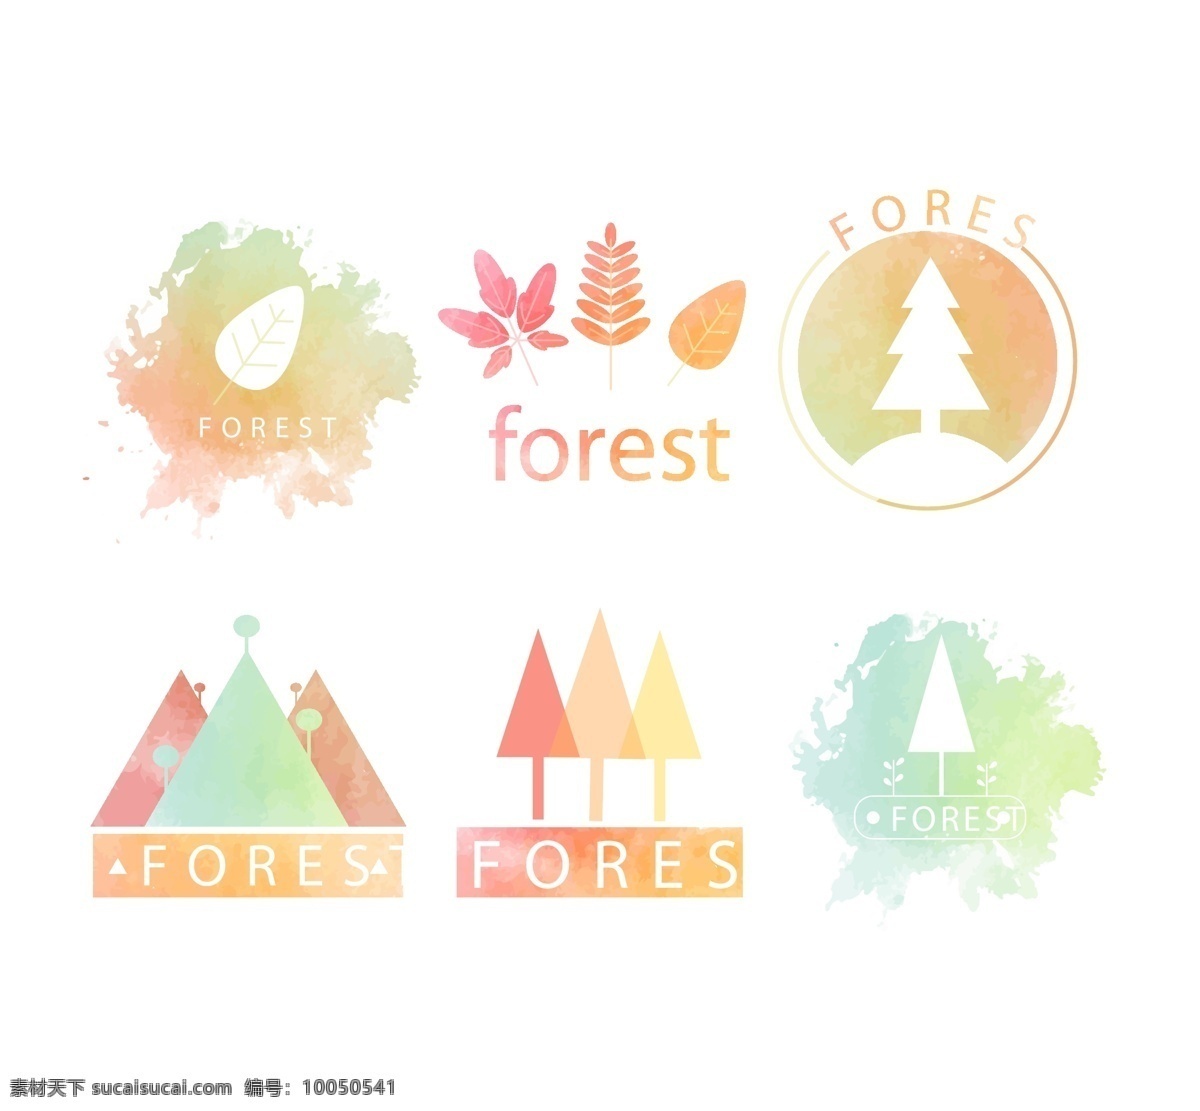 精美 水彩 森标 识 漂亮 森林 树叶 标识 矢量素材 手绘 树